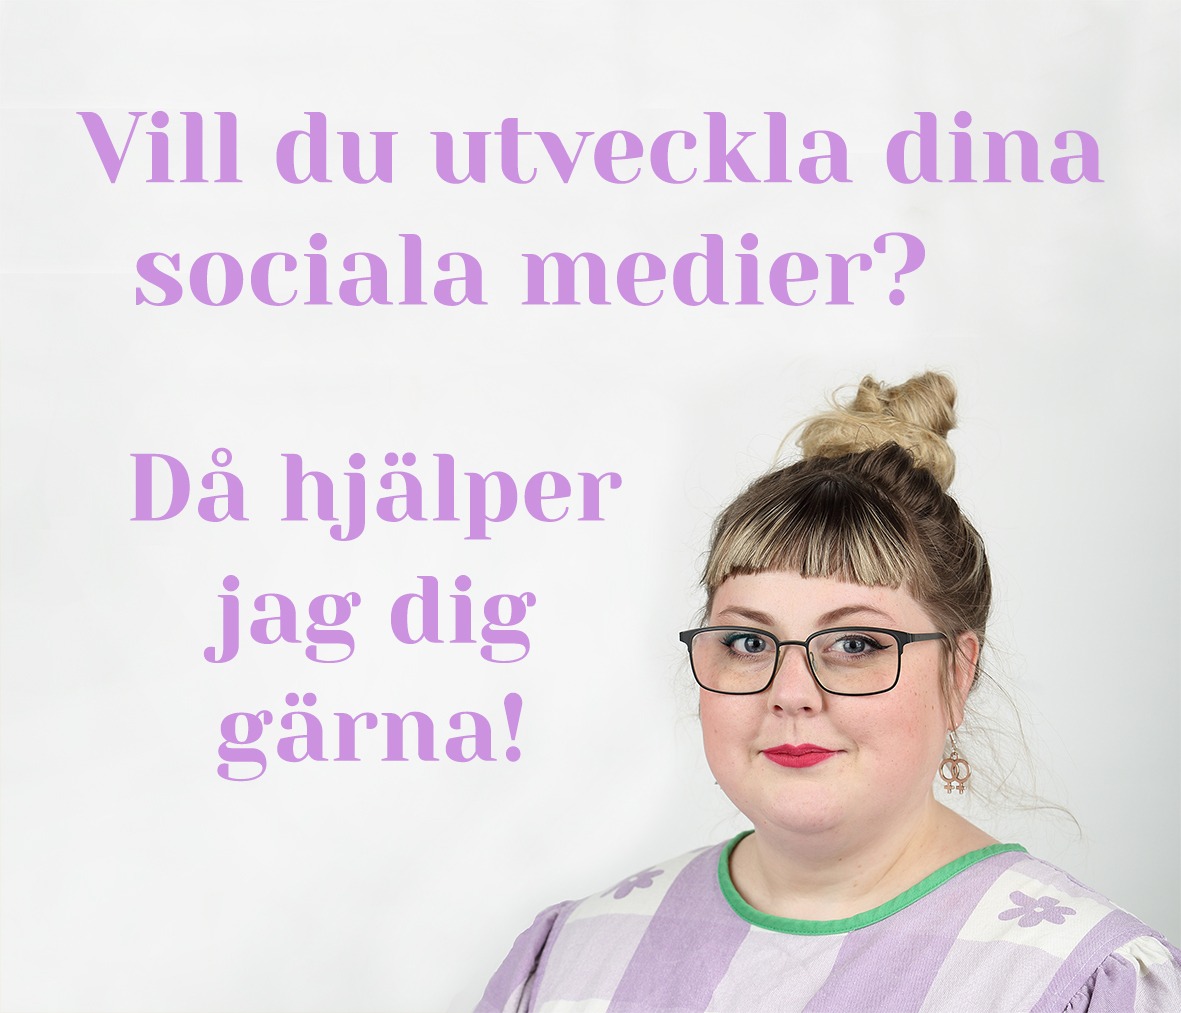 En bild på Sofia i lilarutigklänning, knut på huvudet, glasögon och rosa läppstift med texten "Vill du utveckla dina sociala medier? Då hjälper jag dig gärna!"